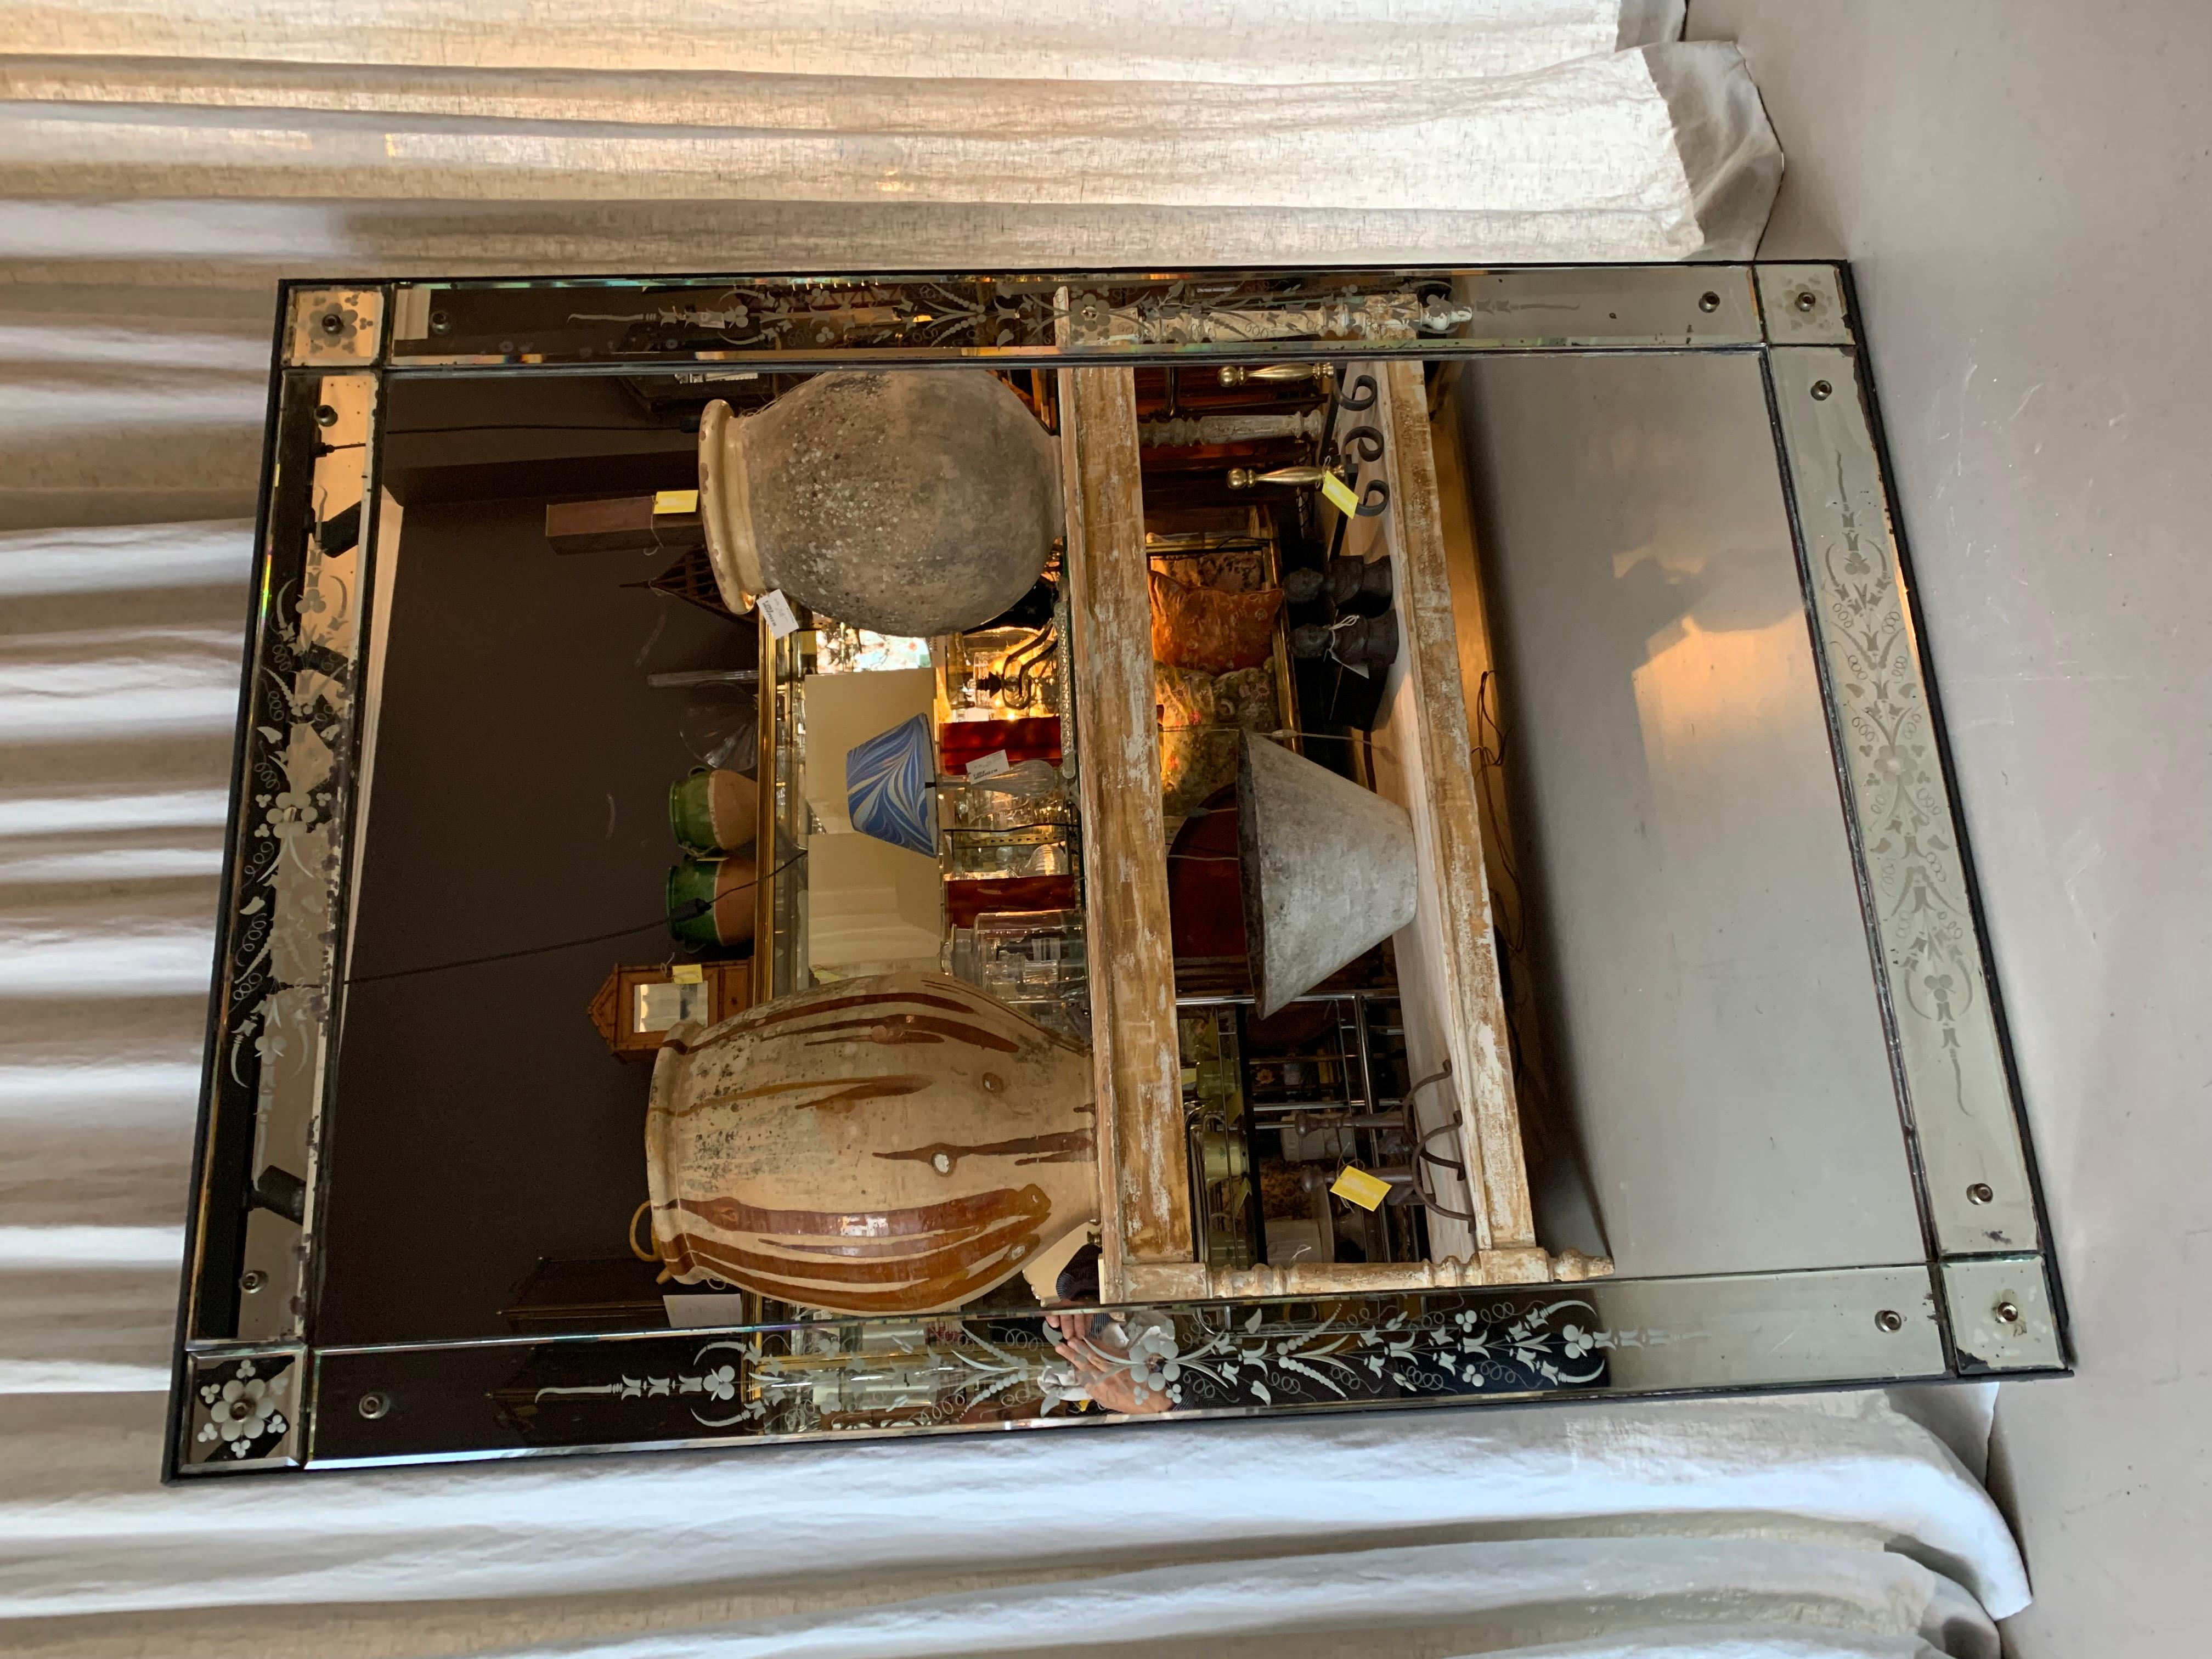 GROSSER und wunderschöner antiker französischer Spiegel im venezianischen Stil mit geschliffenen und gravierten Glasscheiben und dem originalen Spiegel - super Patina.